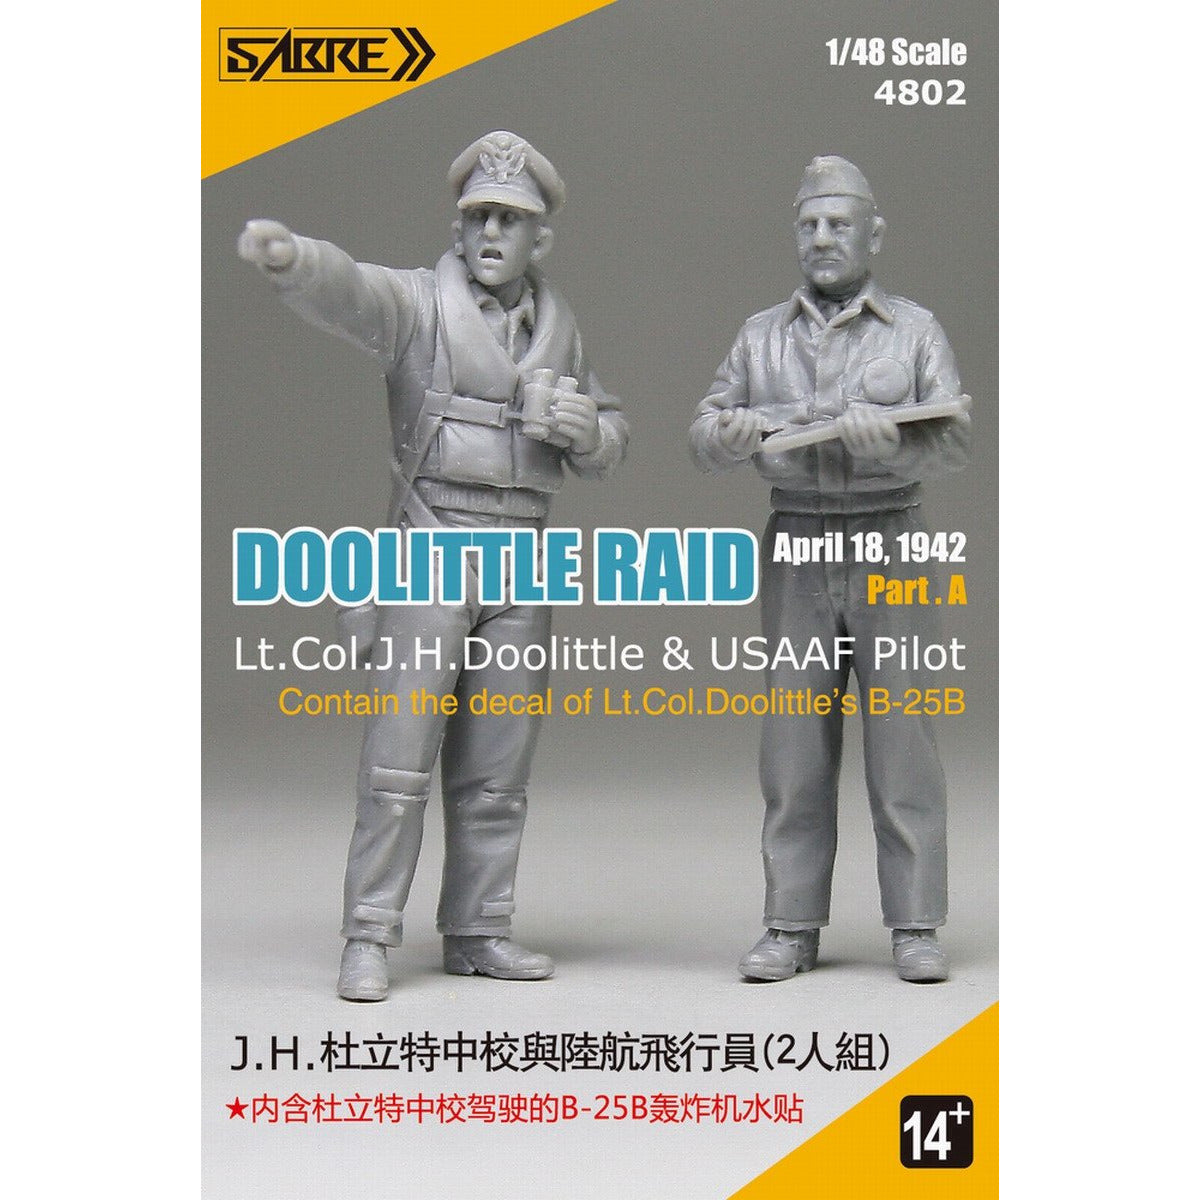 Doolittle Raid Figure set (2) 1/48 by Sabre